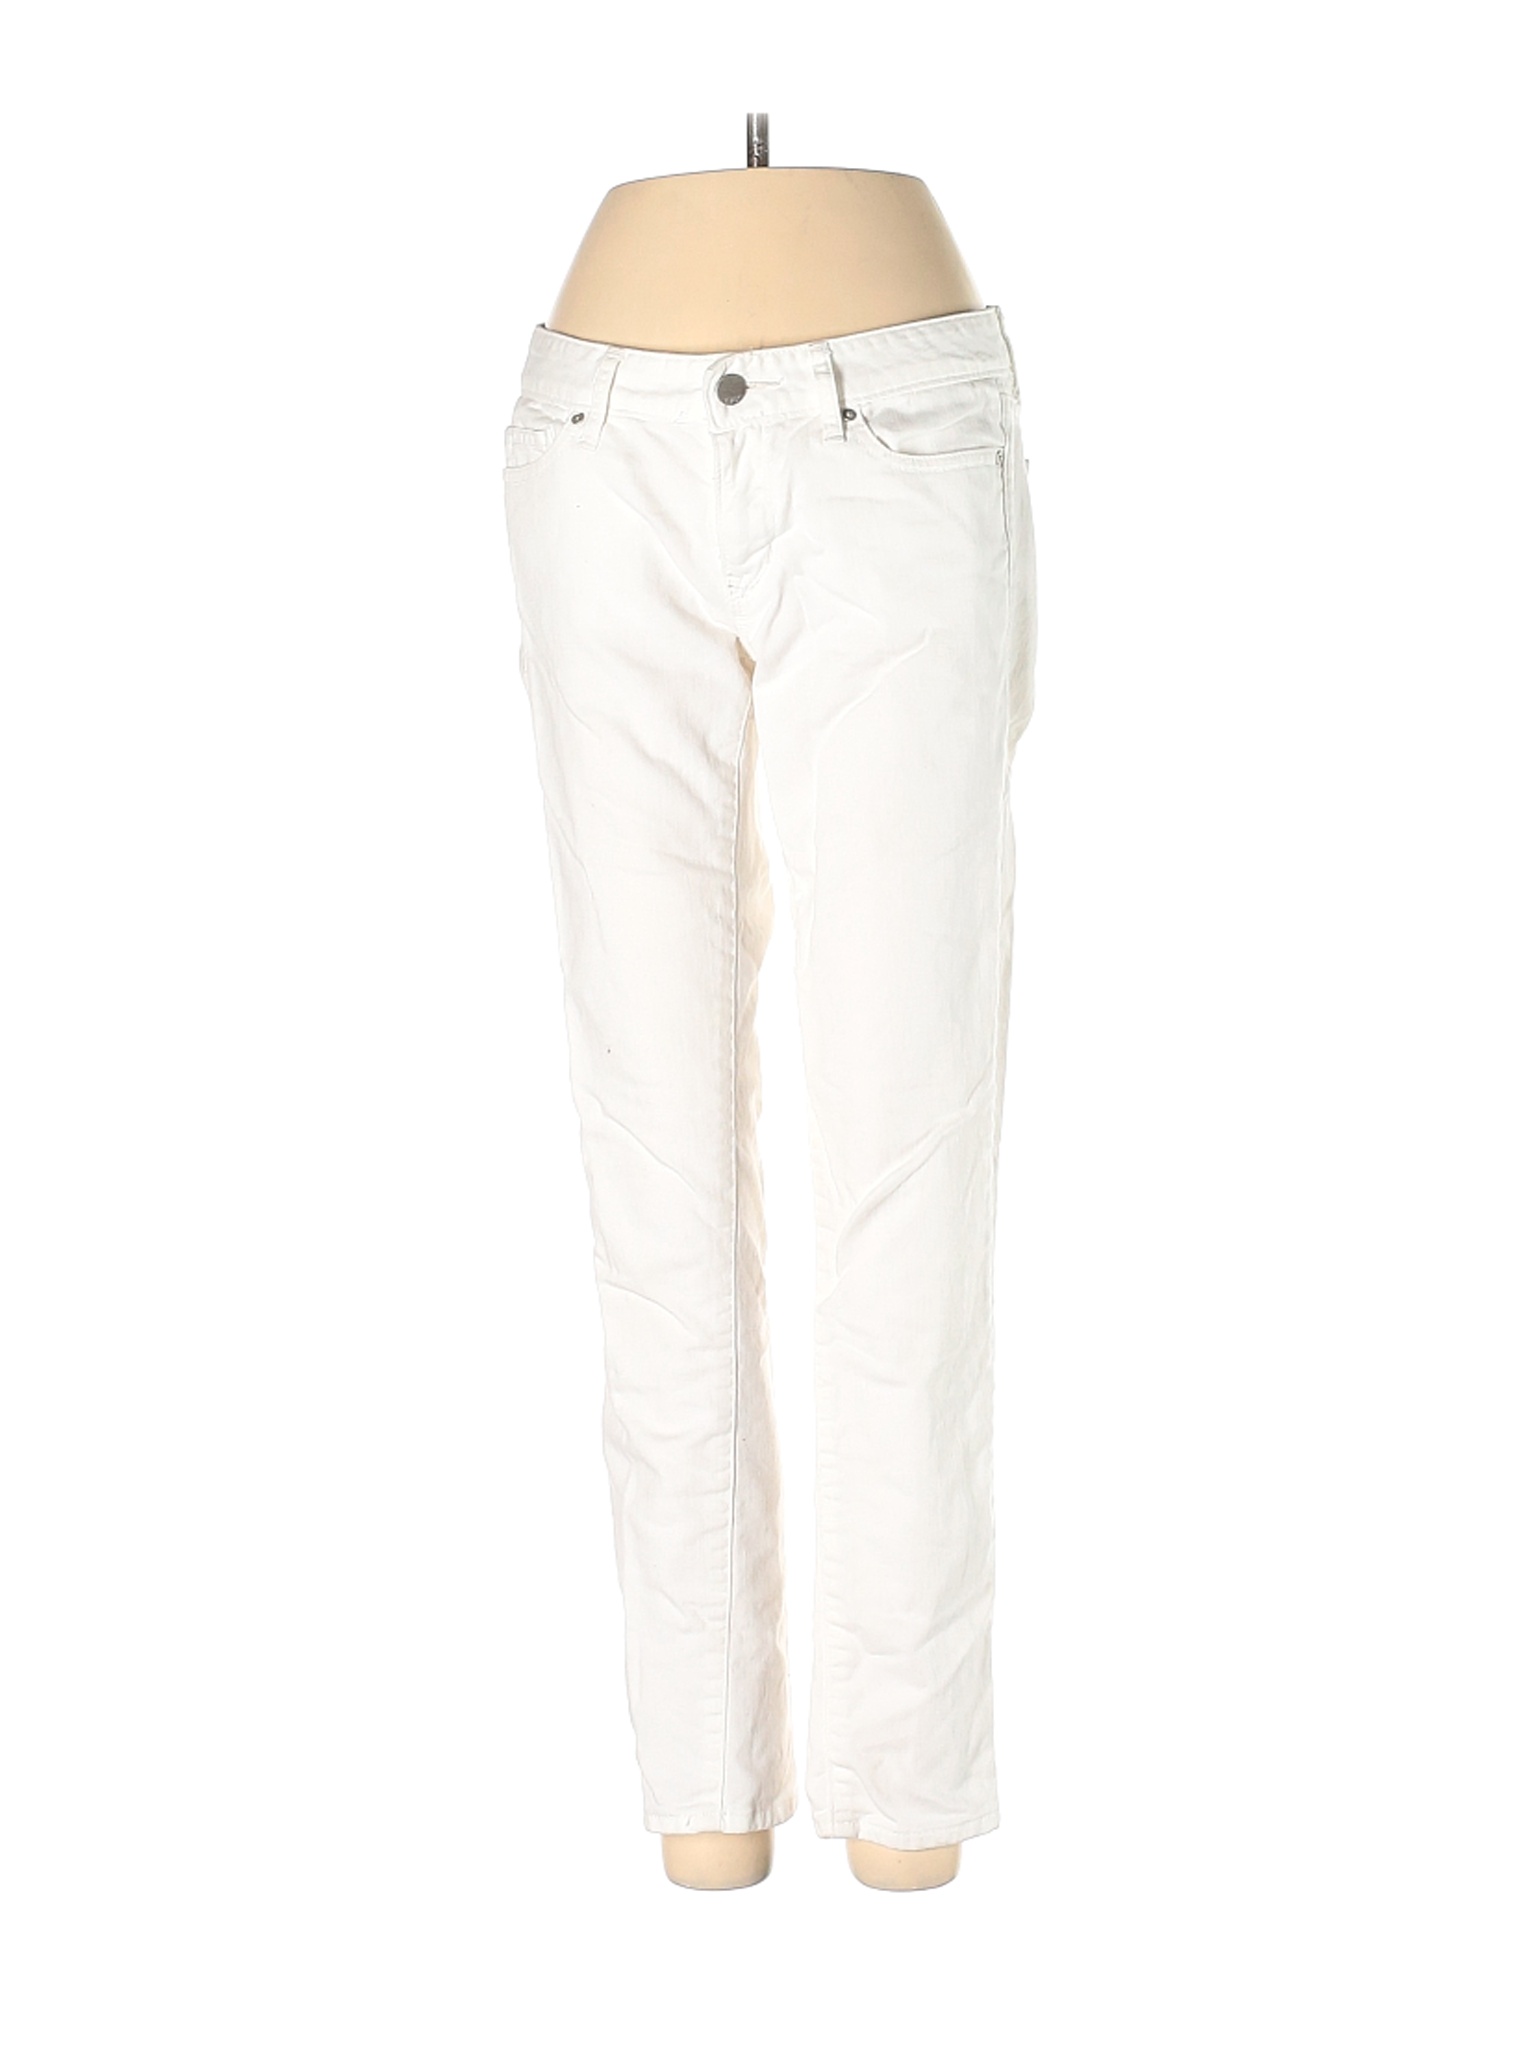 Gap Women White Jeans 25W | eBay